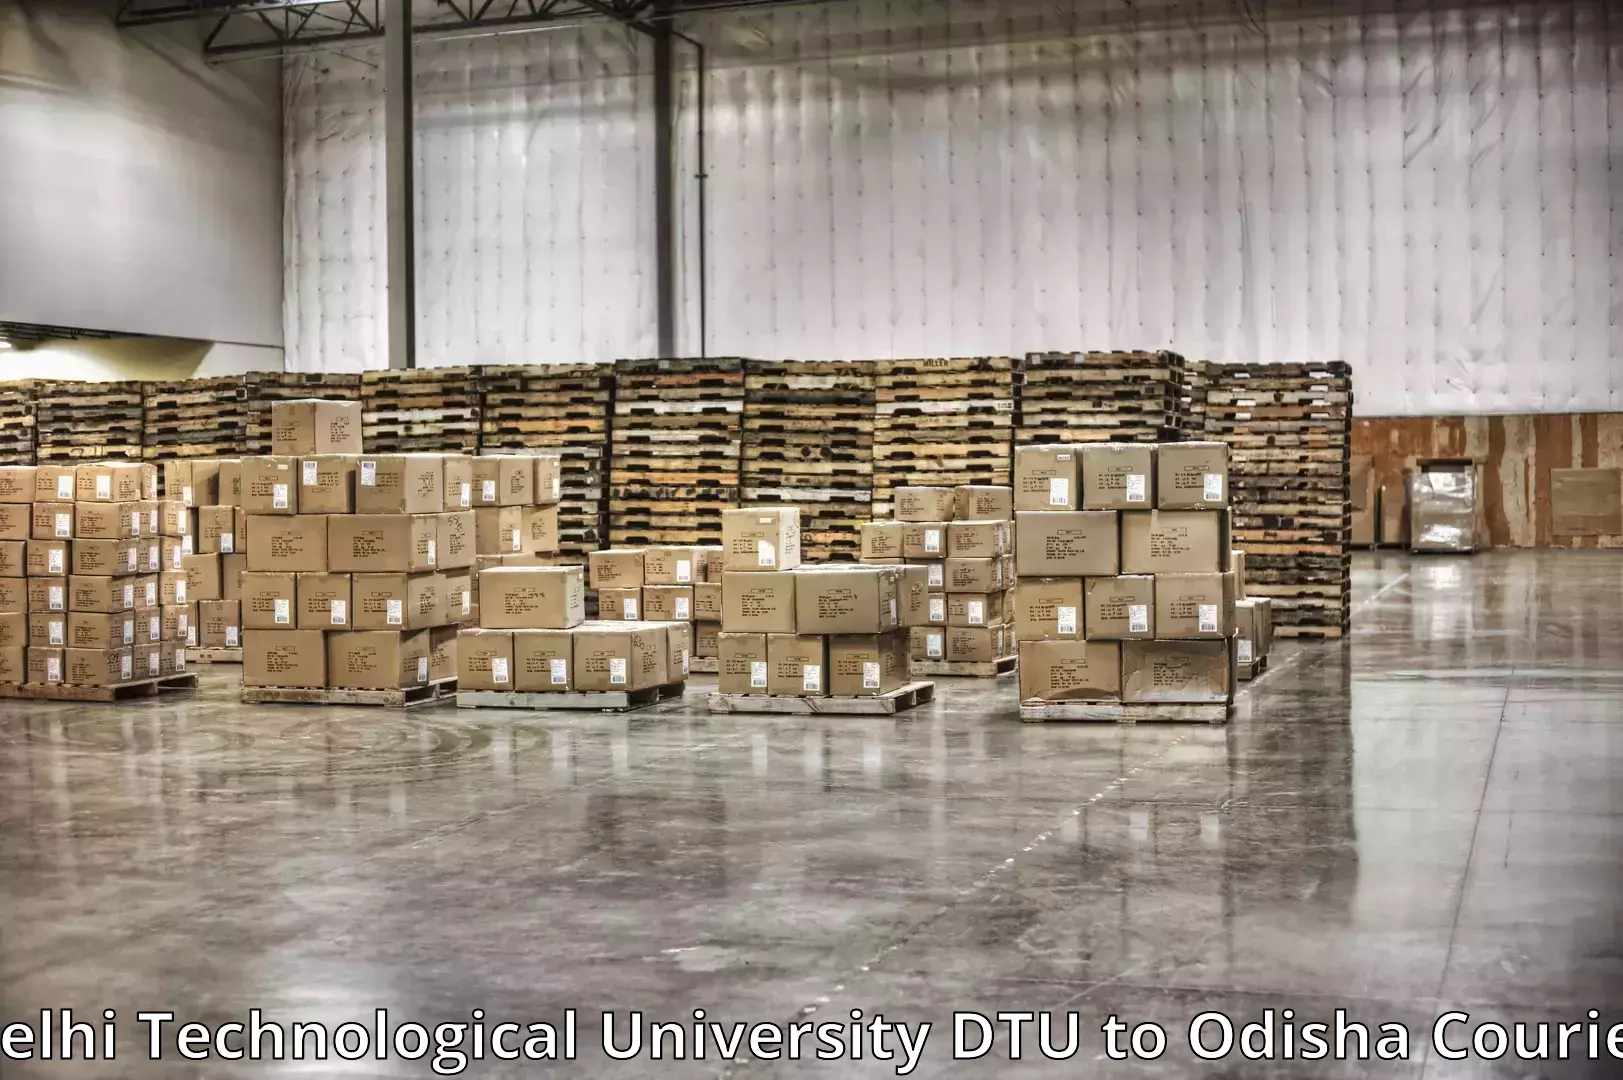 Furniture transport and logistics Delhi Technological University DTU to Kantamal